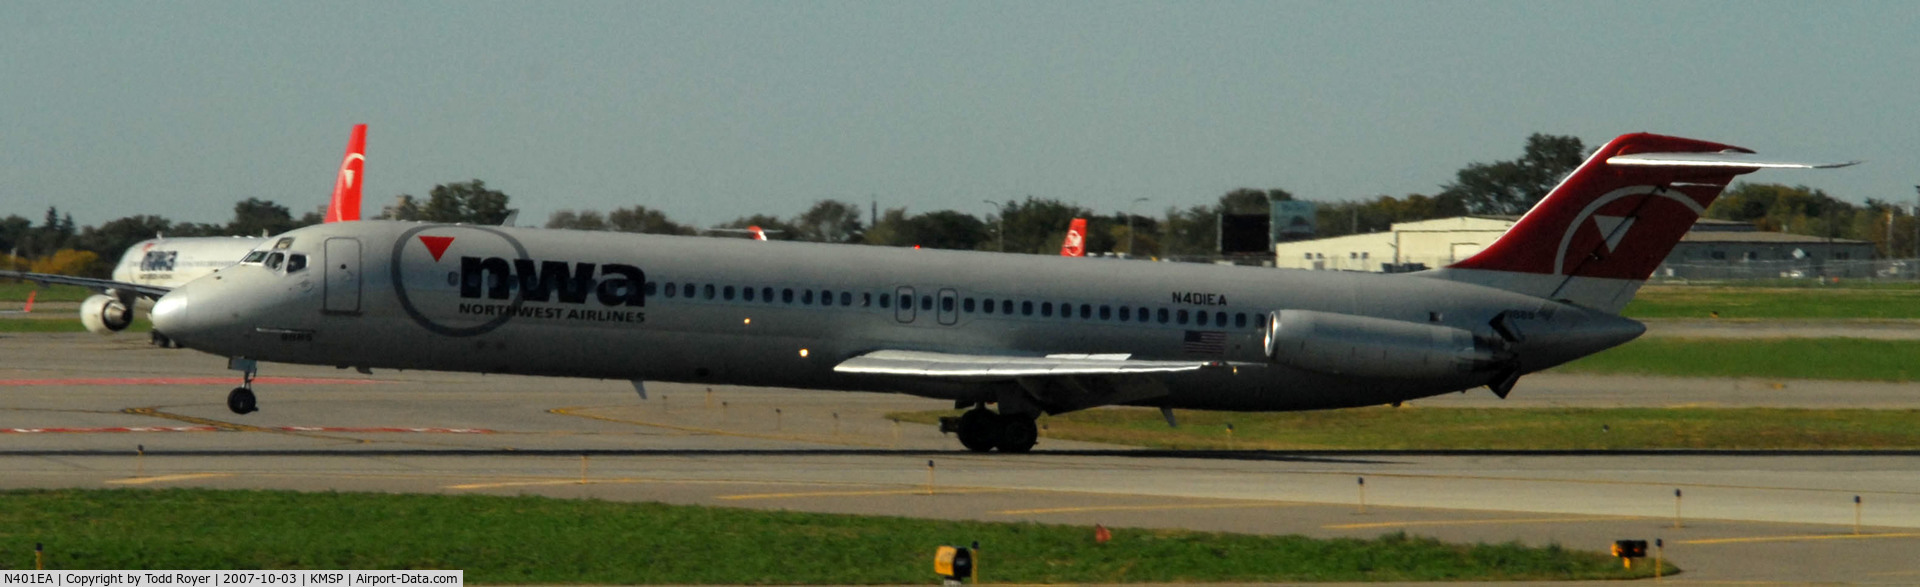 N401EA, 1975 Douglas DC-9-51 C/N 47682, Landing Runway 22 at MSP